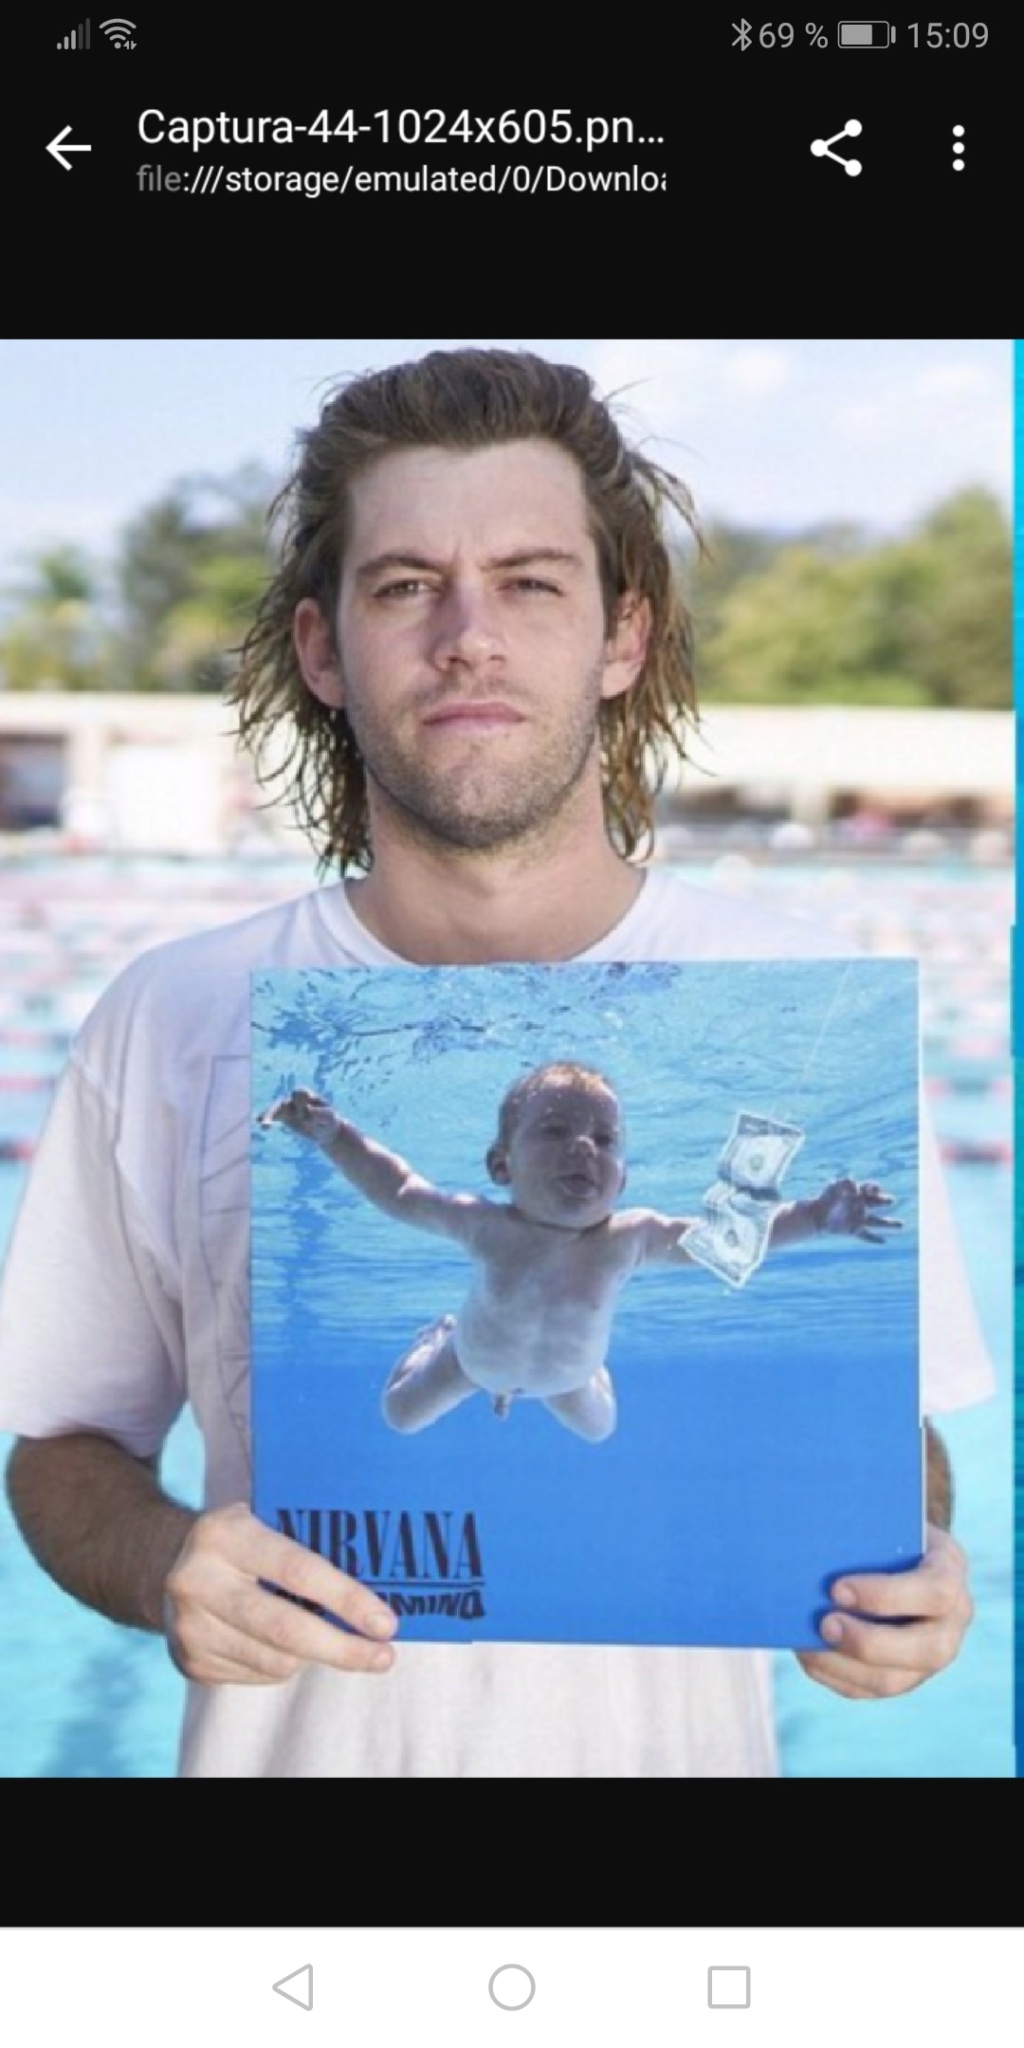 El Efecto Nirvana: 20 años después de Nevermind - Página 4 Screen15